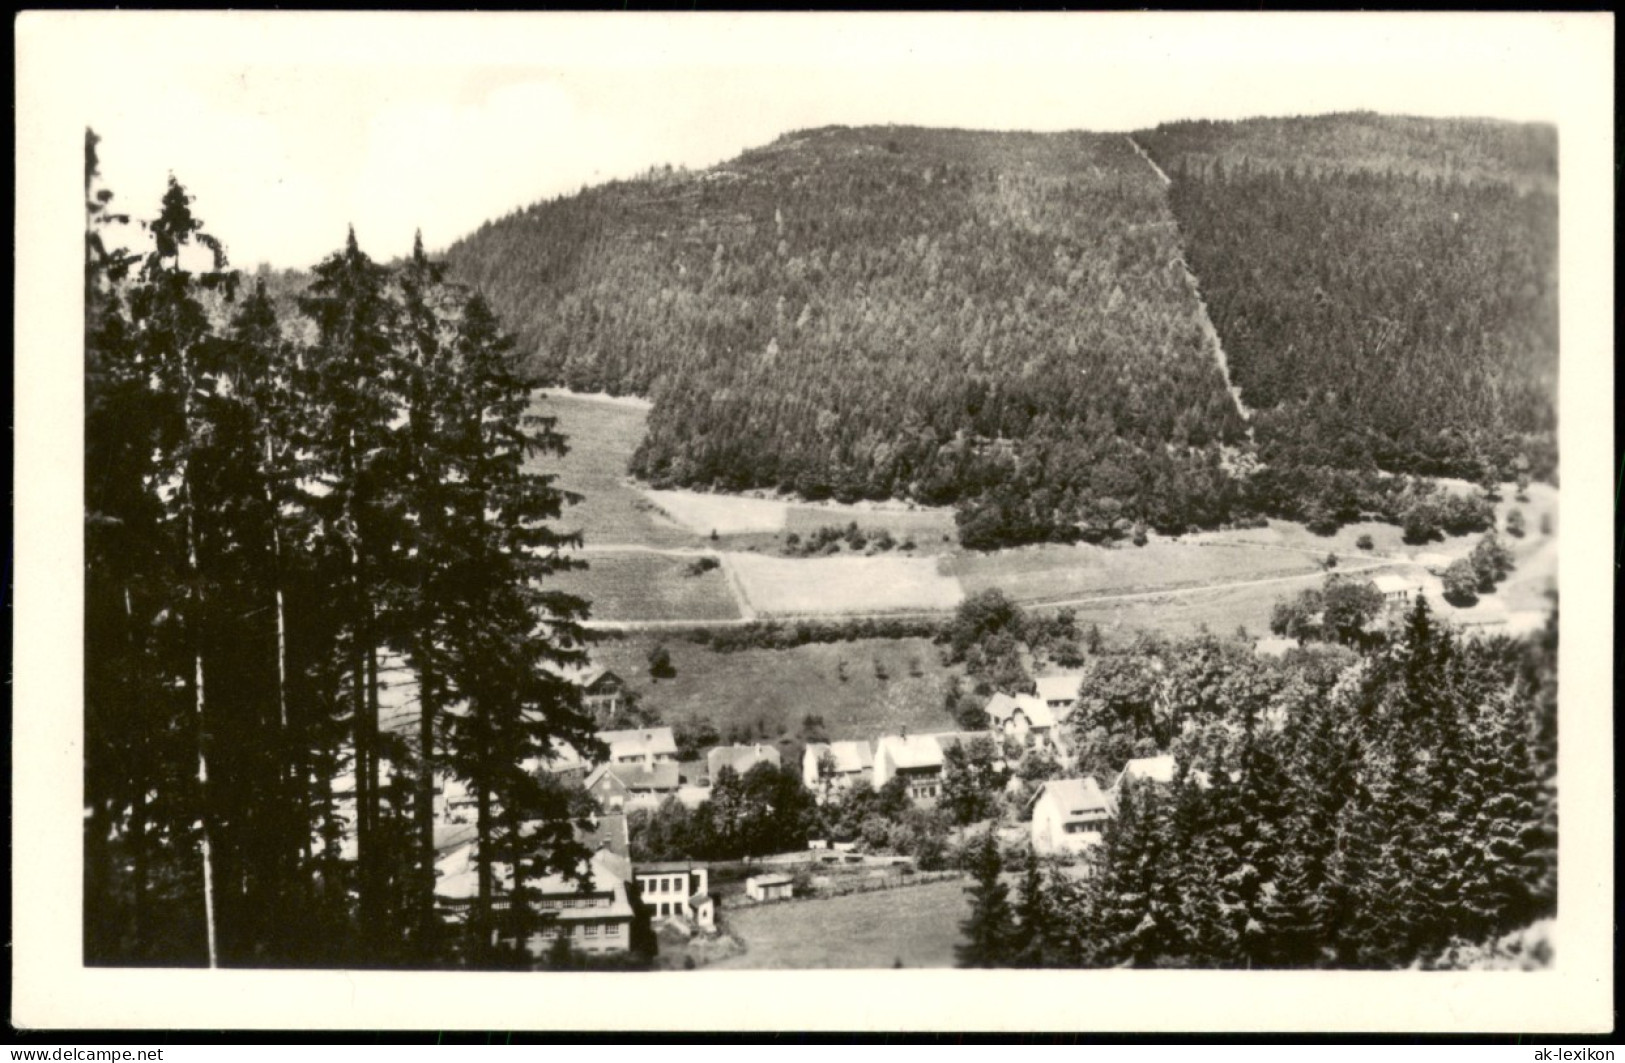 Ansichtskarte Steinbach-Hallenberg Panorama-Ansicht Blick Zum Hohen Berg 1954 - Steinbach-Hallenberg